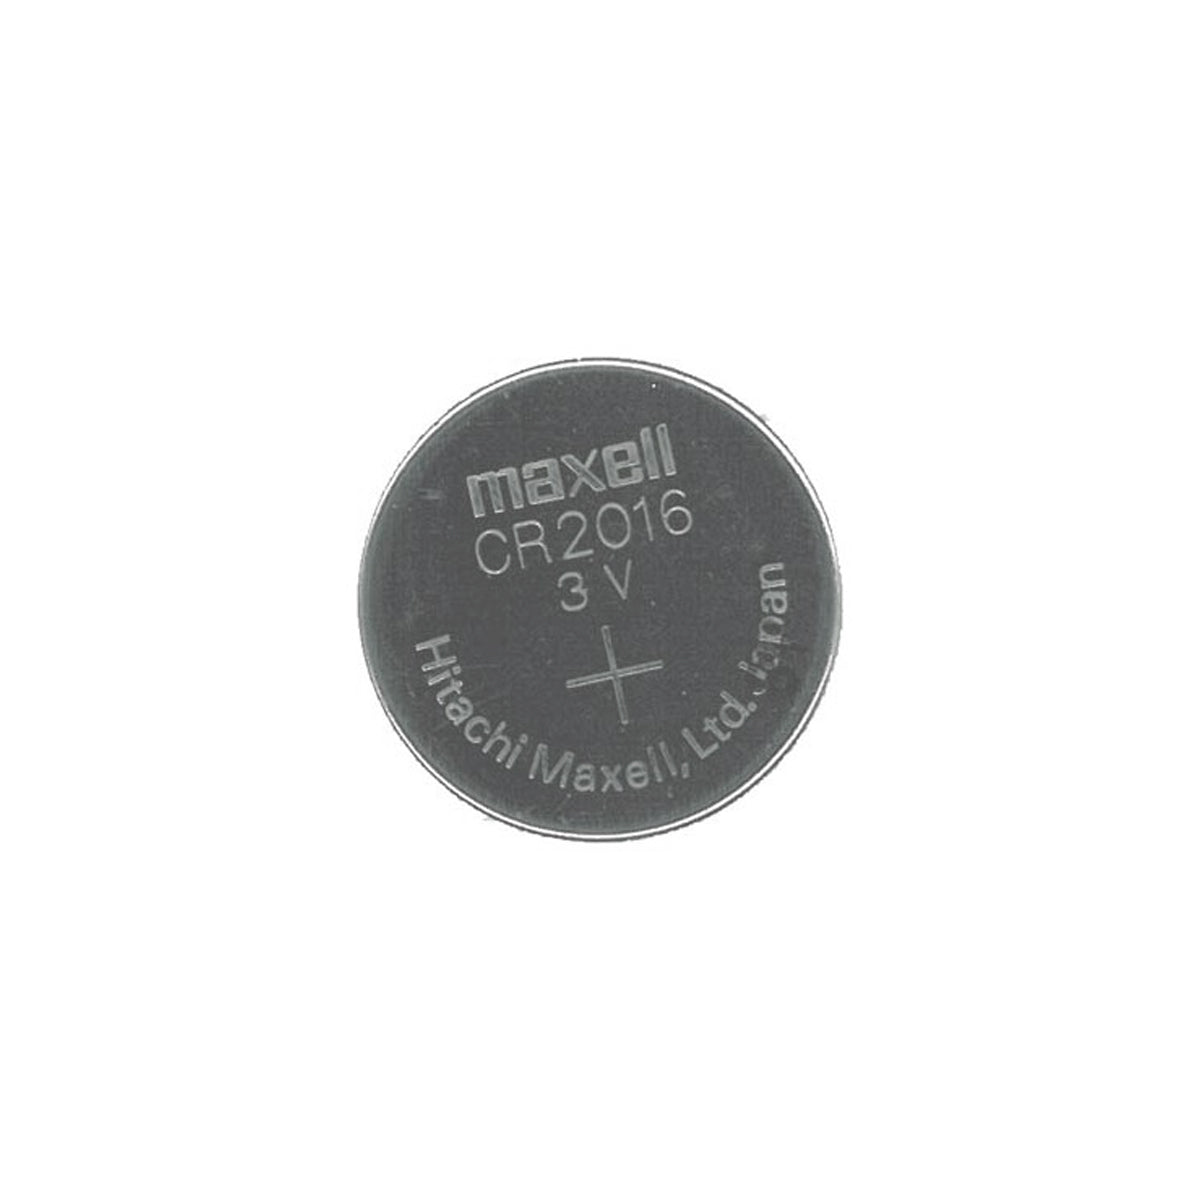 Microbatería CR2016 3v.  Maxell